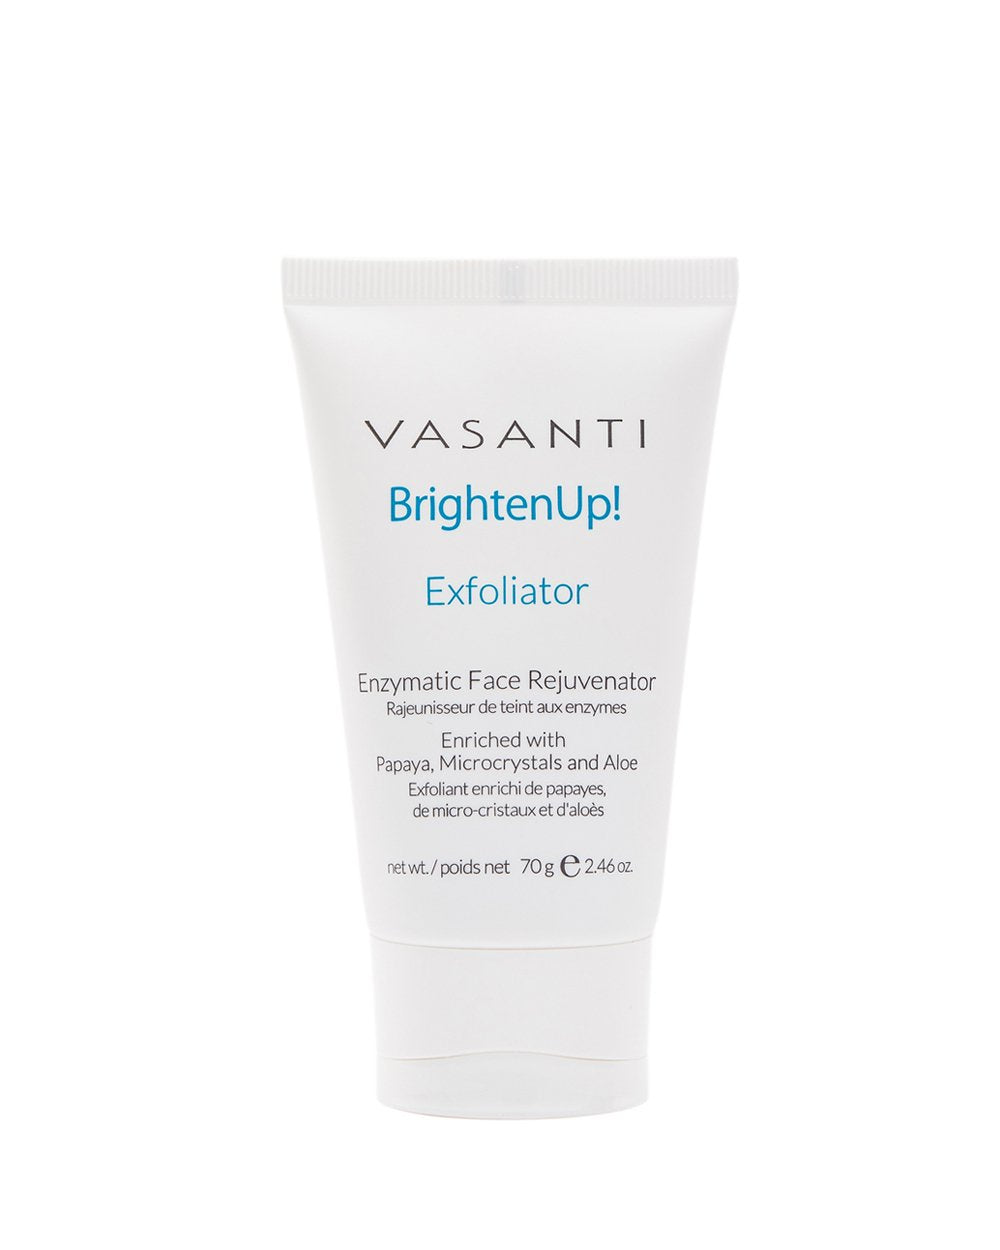 Brighten Up! Exfoliator (Enzymatic Face Rejuvenator)